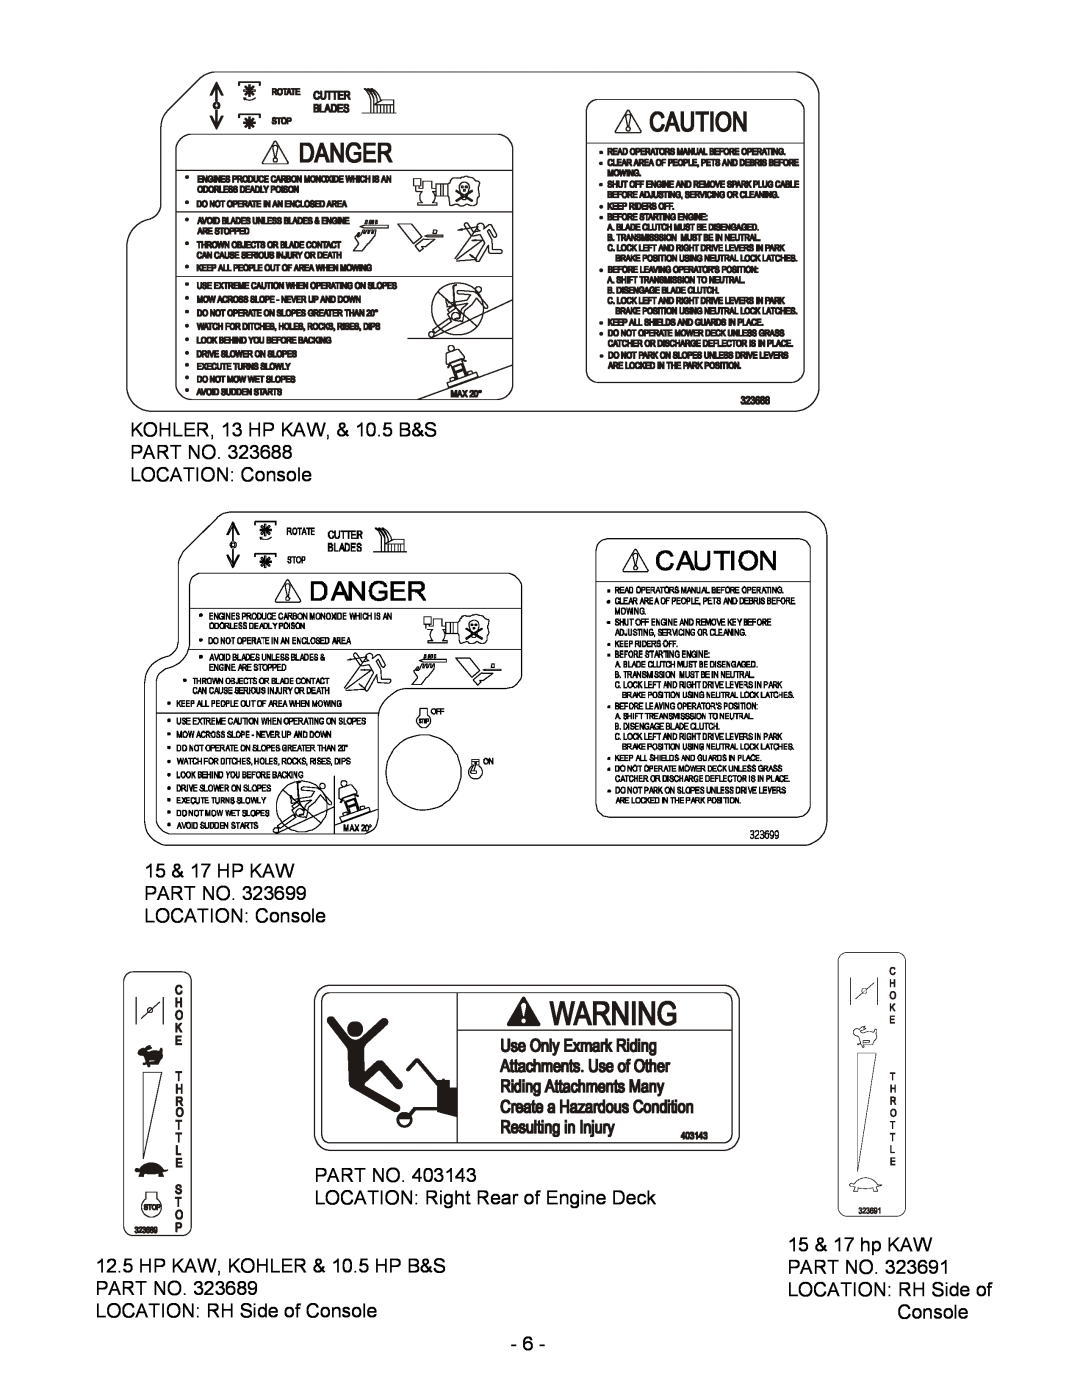 Exmark Metro manual KOHLER, 13 HP KAW, & 10.5 B&S PART NO LOCATION Console, 15 & 17 HP KAW PART NO. 323699 LOCATION Console 